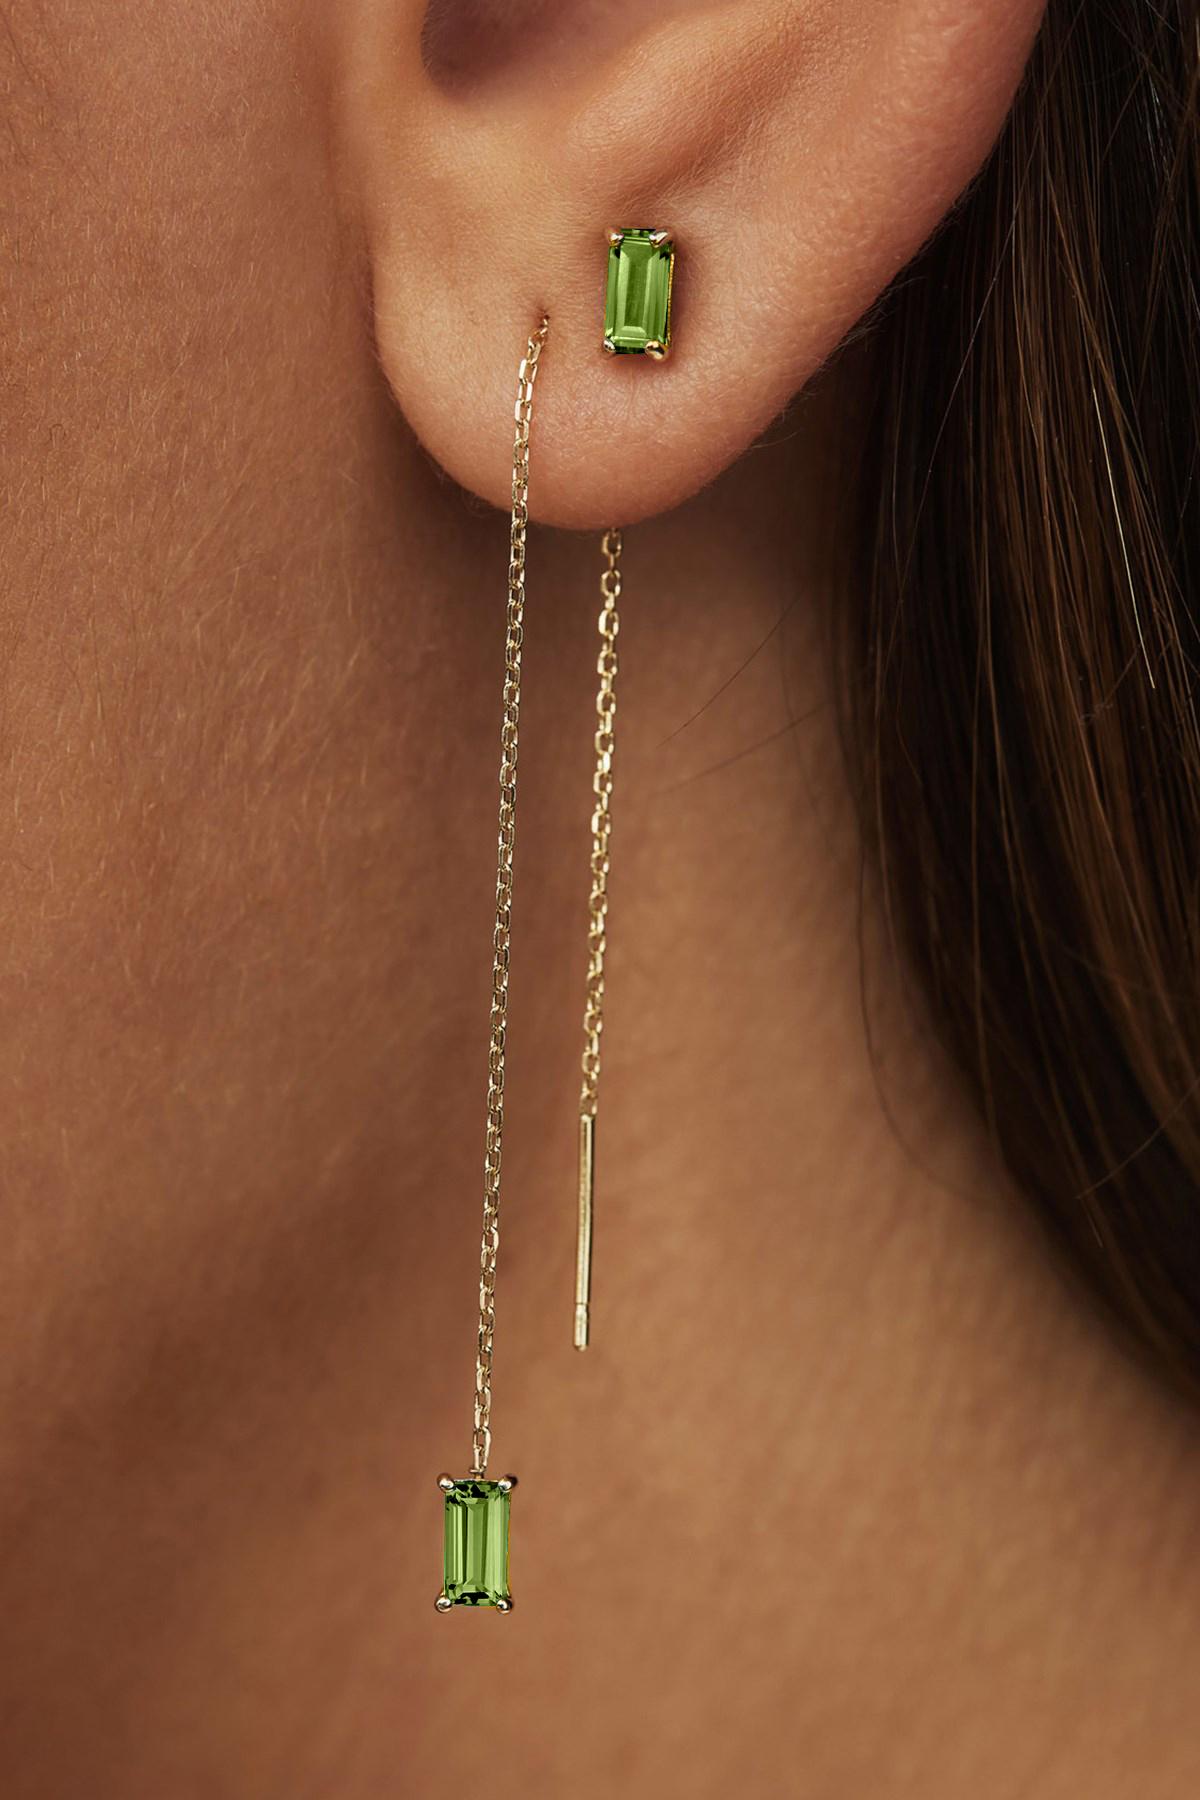 Women's August birthstone peridot 14k gold earrings studs For Sale